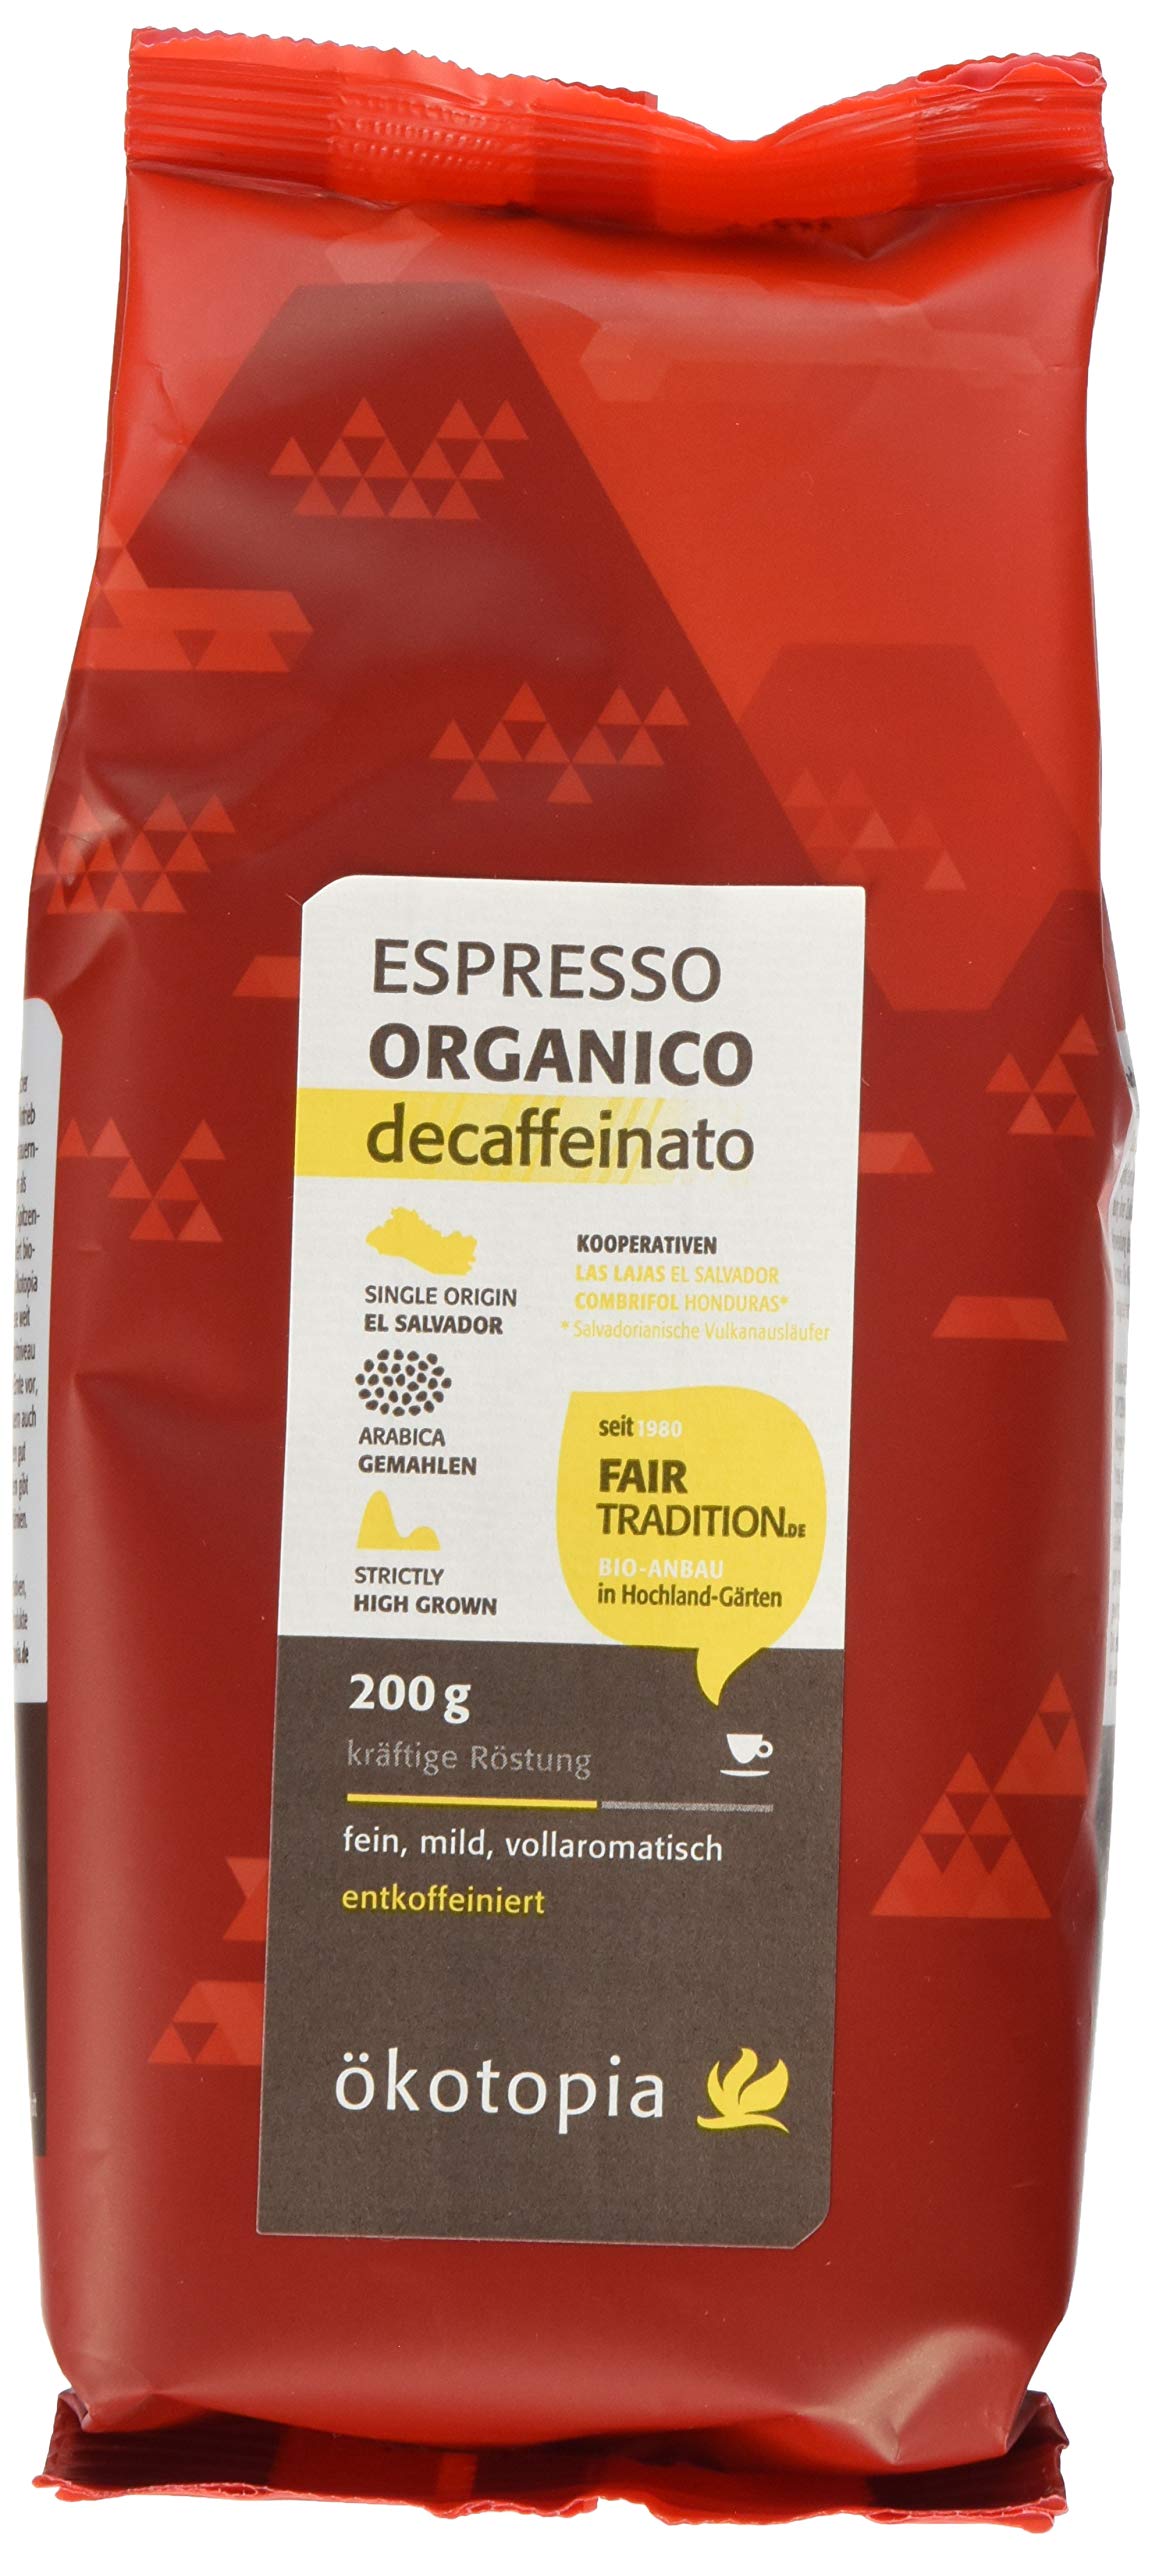 Ökotopia Espresso decaffeinato gemahlen kontrolliert biologischem Anbau, 5er Pack (5 x 200 g)